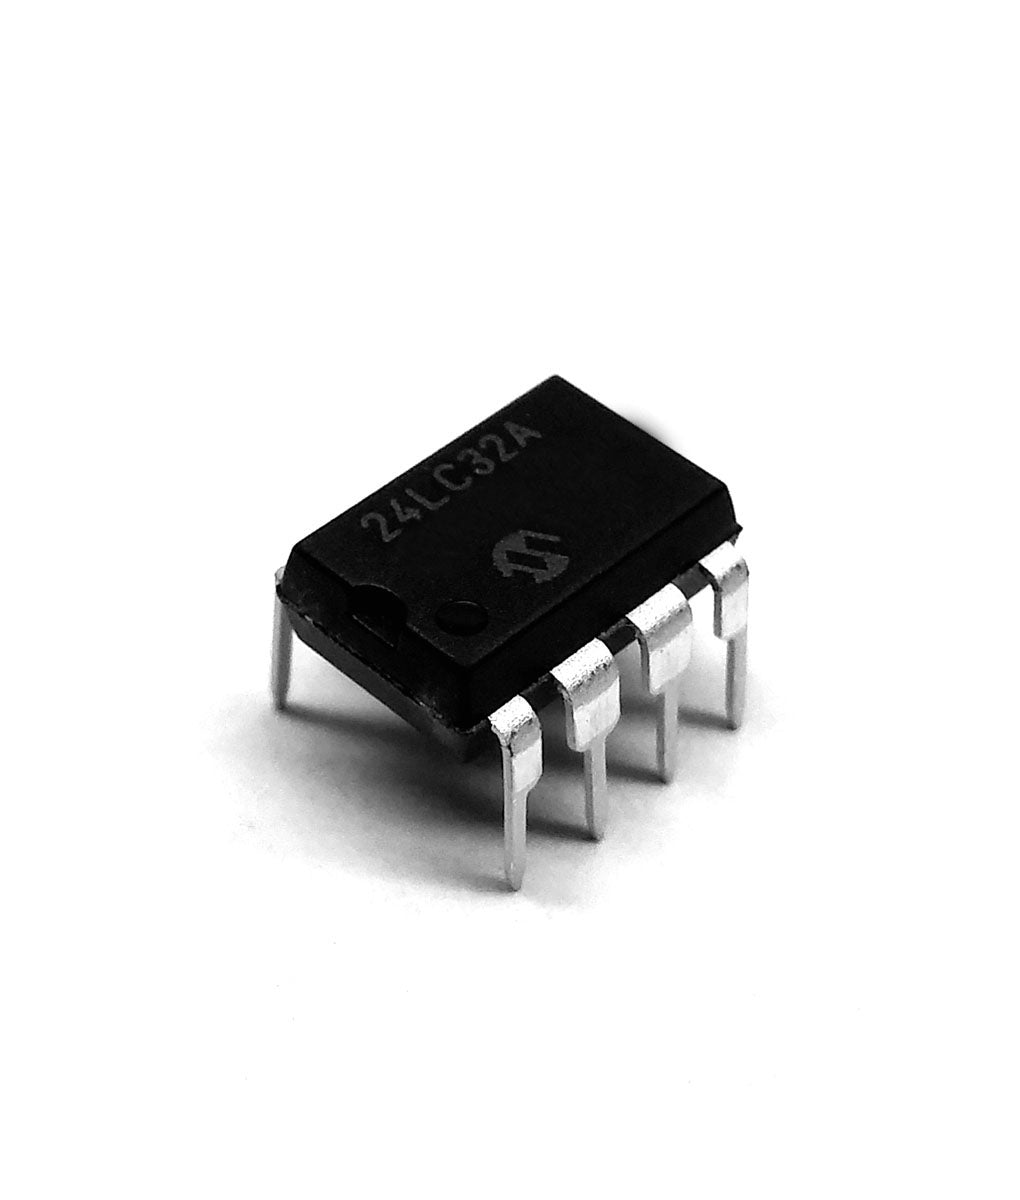 24LC32A Componente elettronico, circuito integrato, transistor, 8 contatti